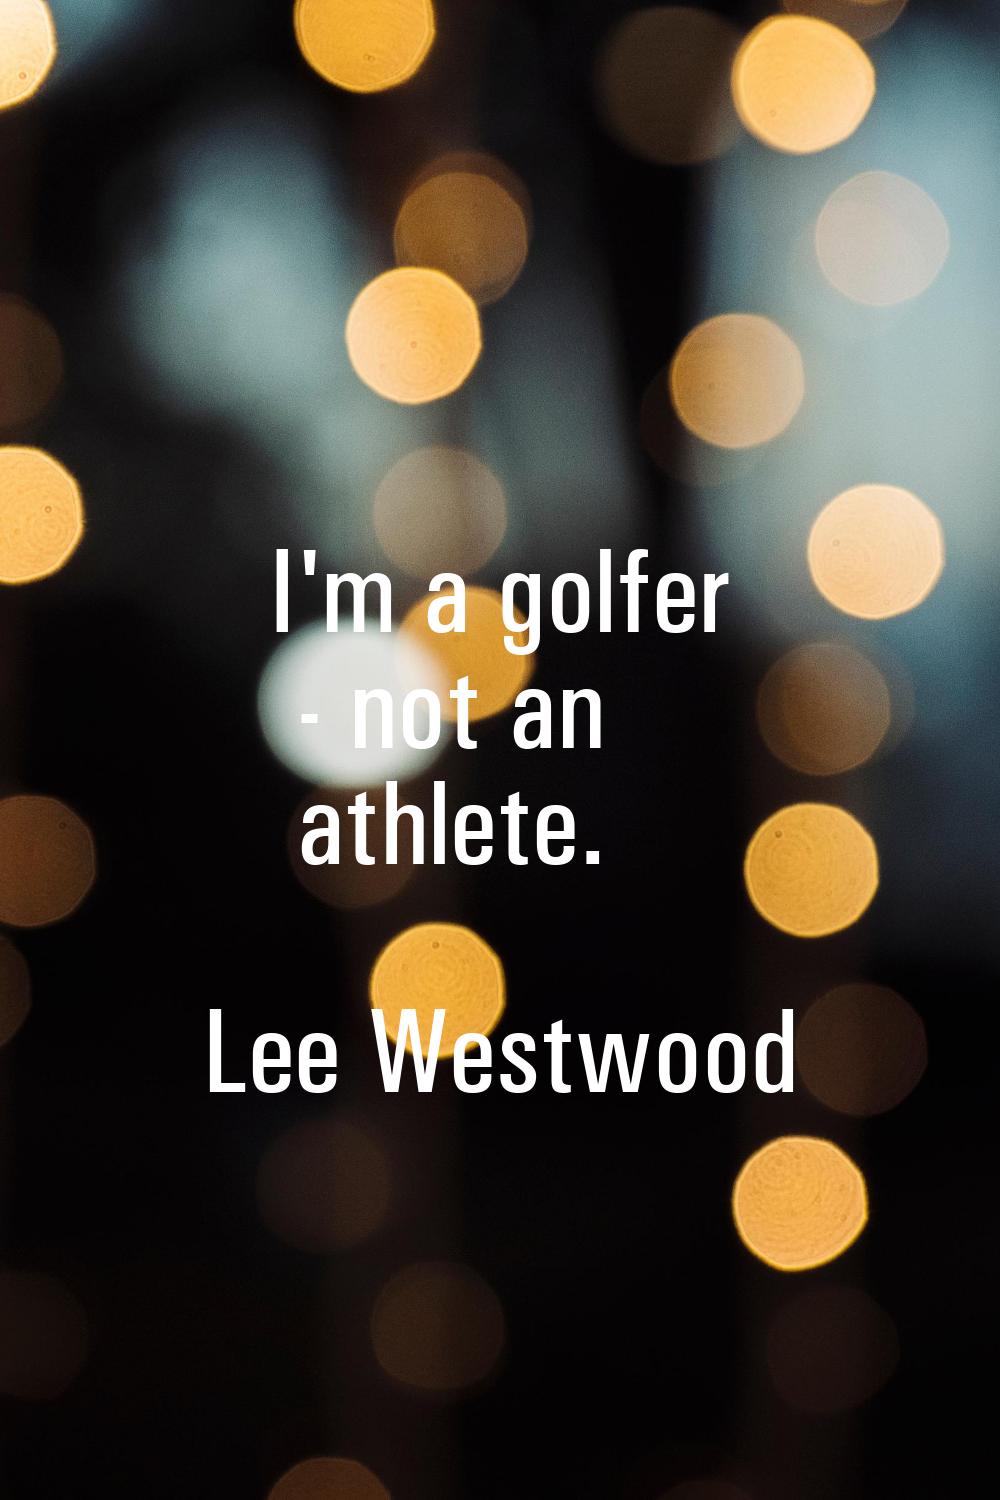 I'm a golfer - not an athlete.